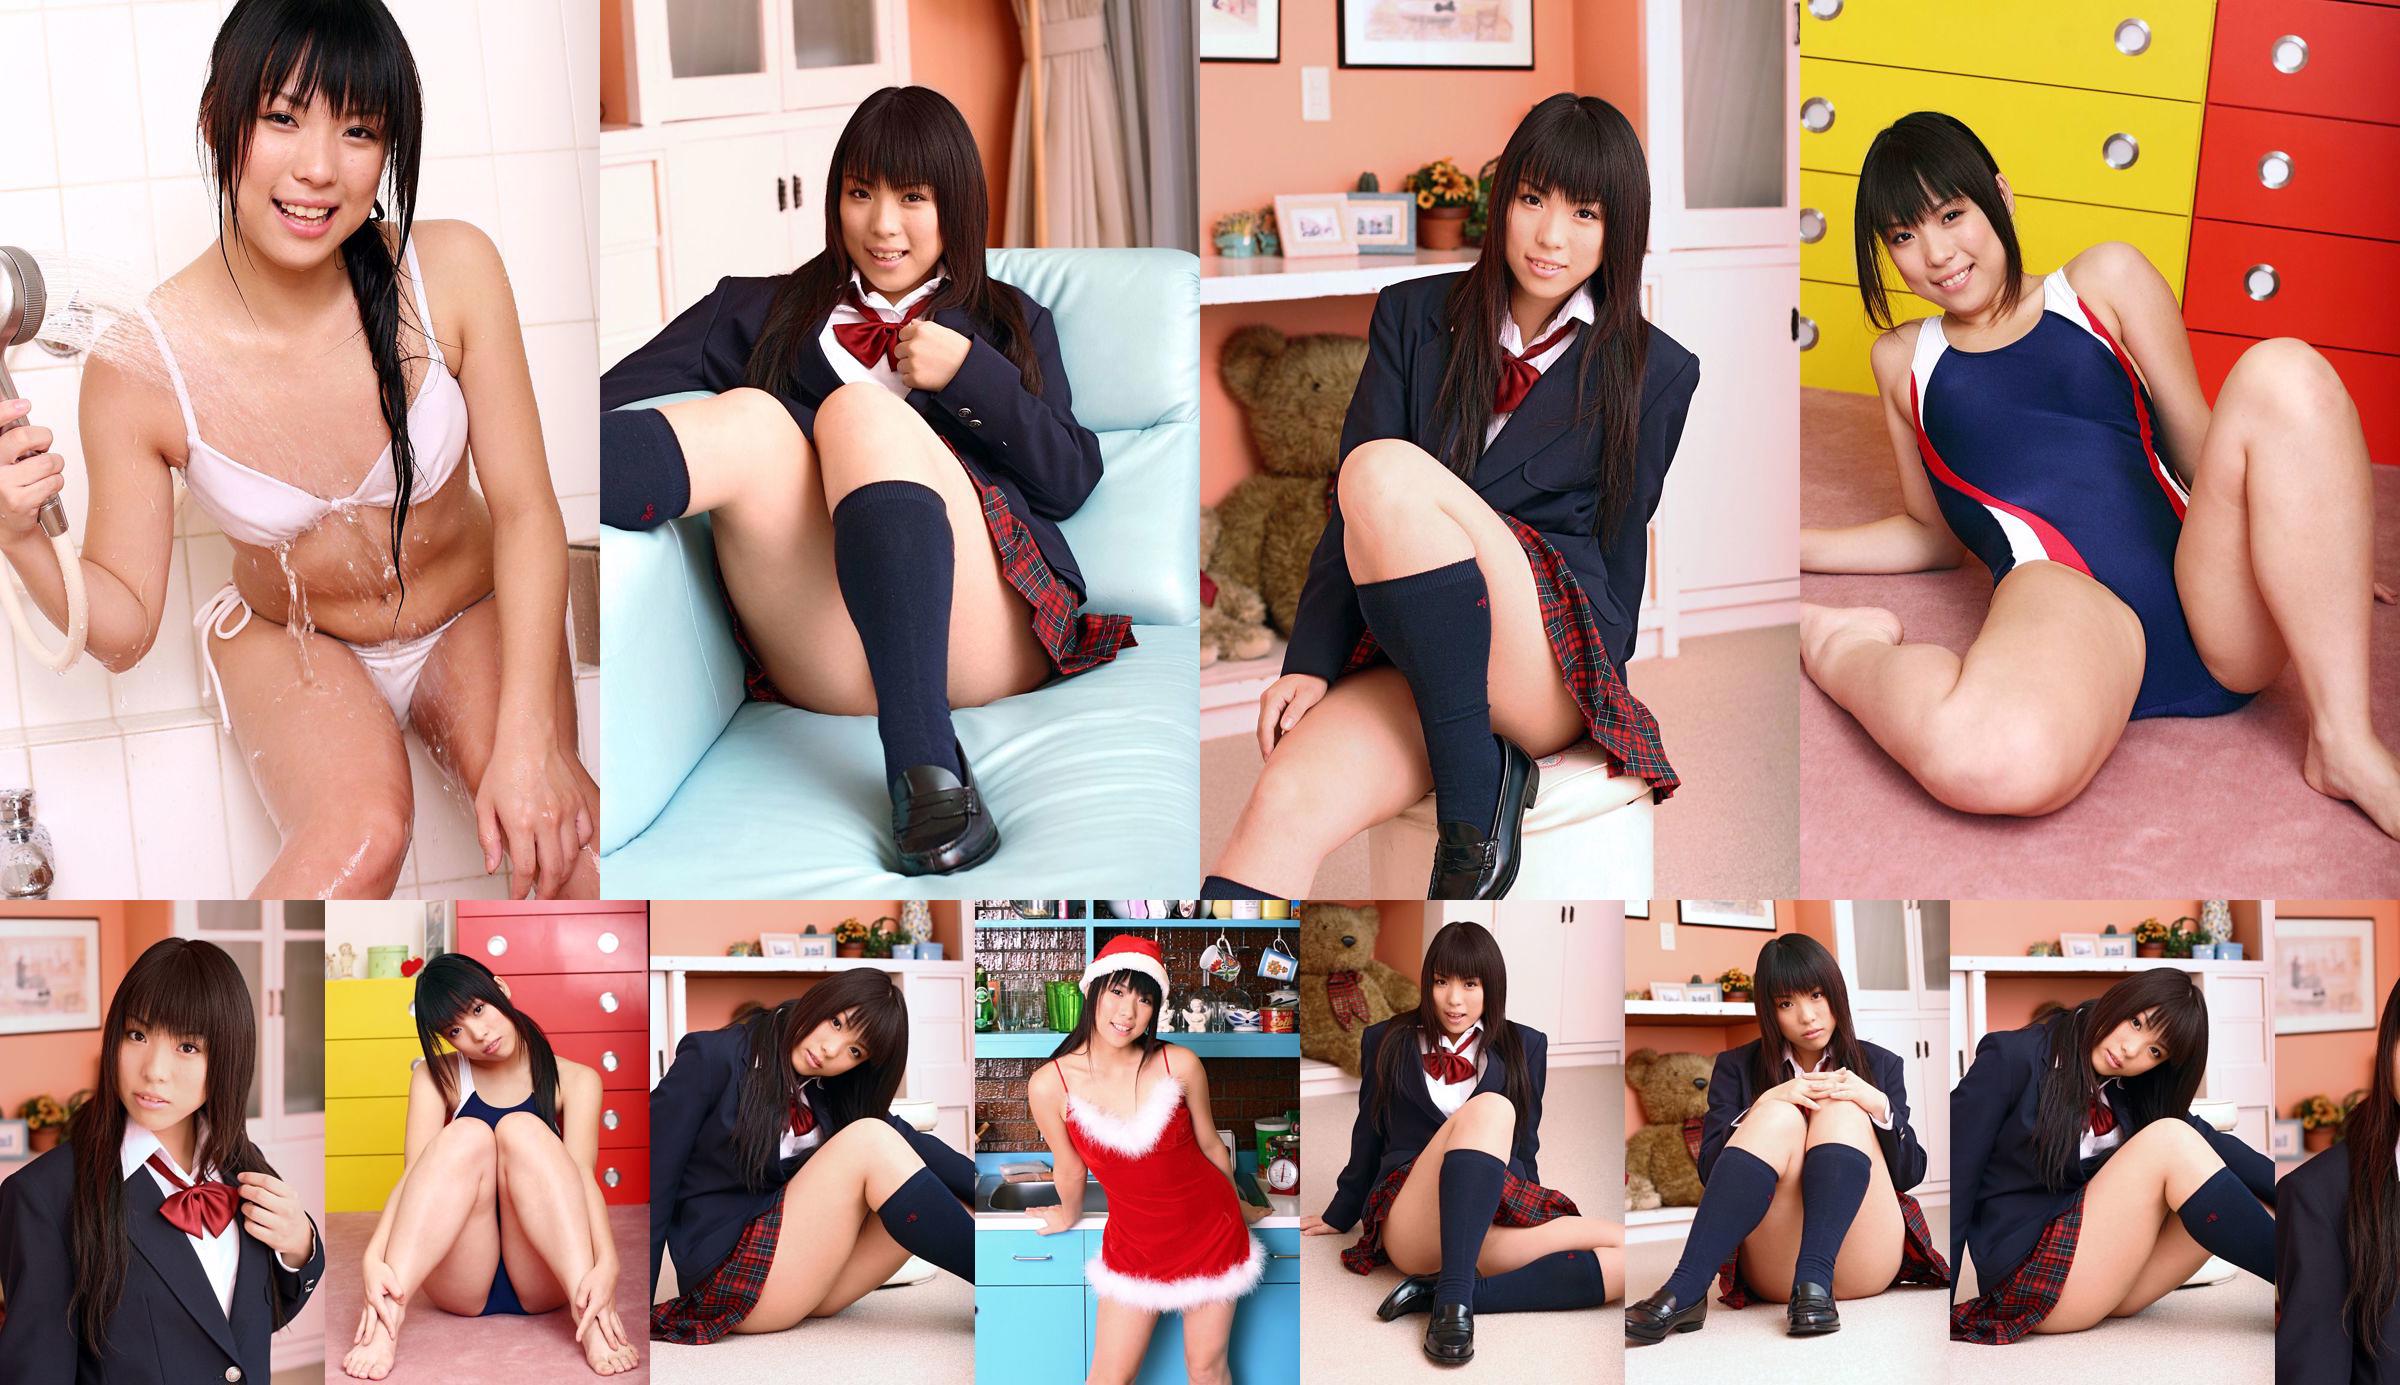 [DGC] Nr. 375 Chiharu Shirakawa Uniform schönes Mädchen Himmel No.44b12d Seite 20